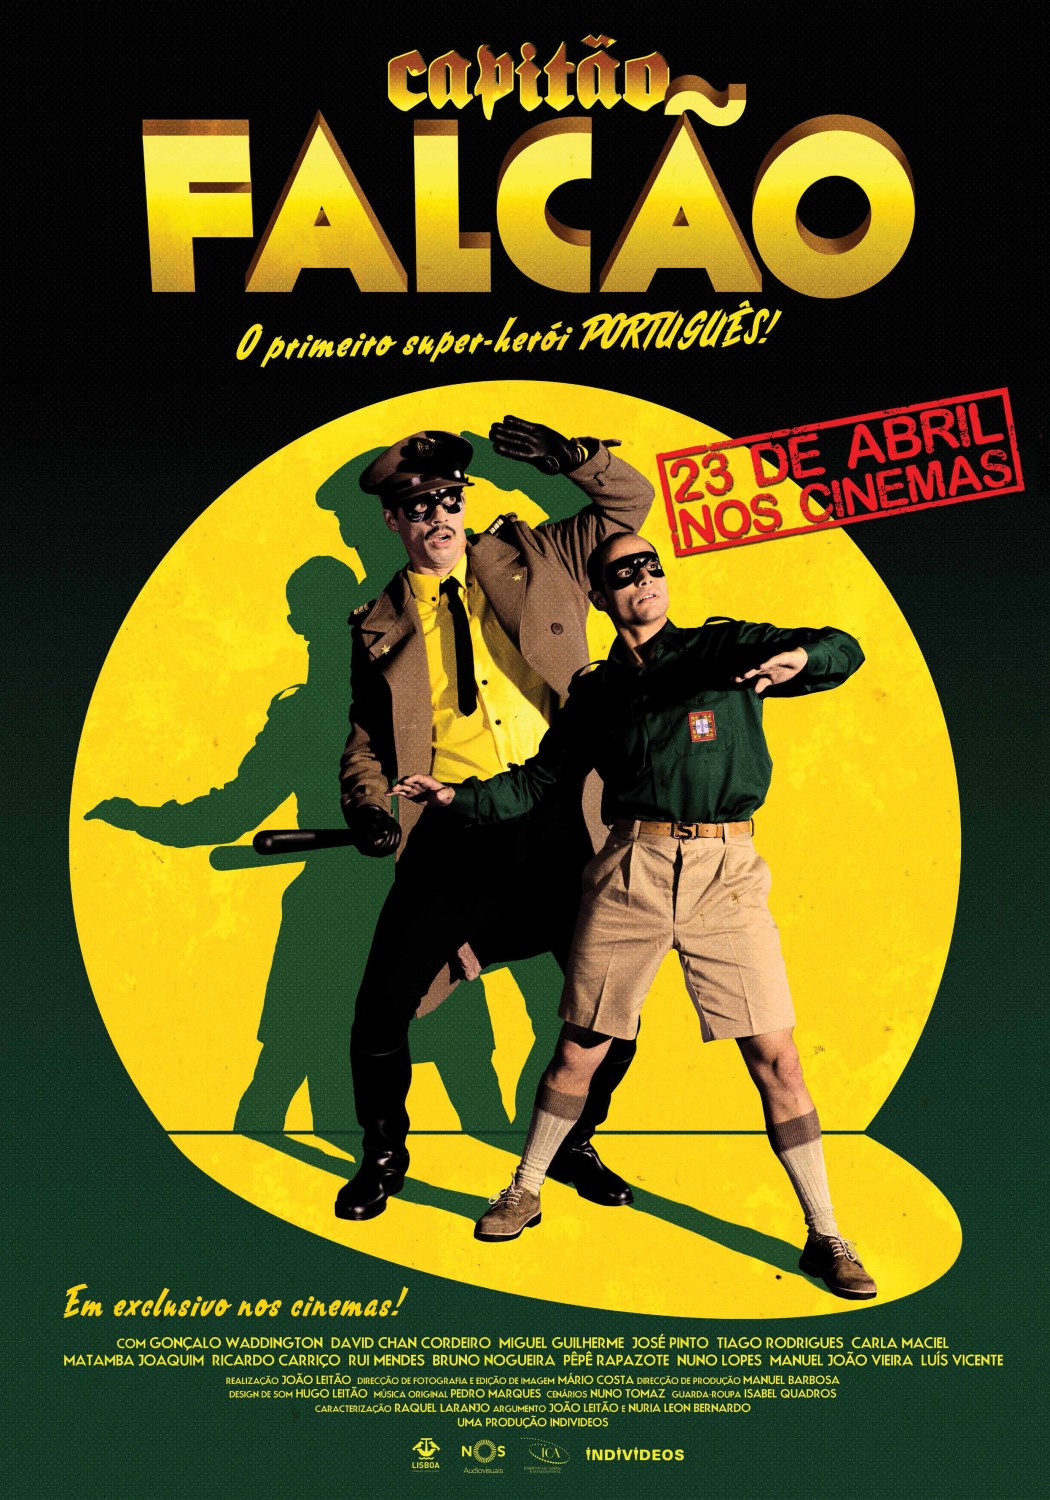 Extra Large Movie Poster Image for Capitão Falcão 